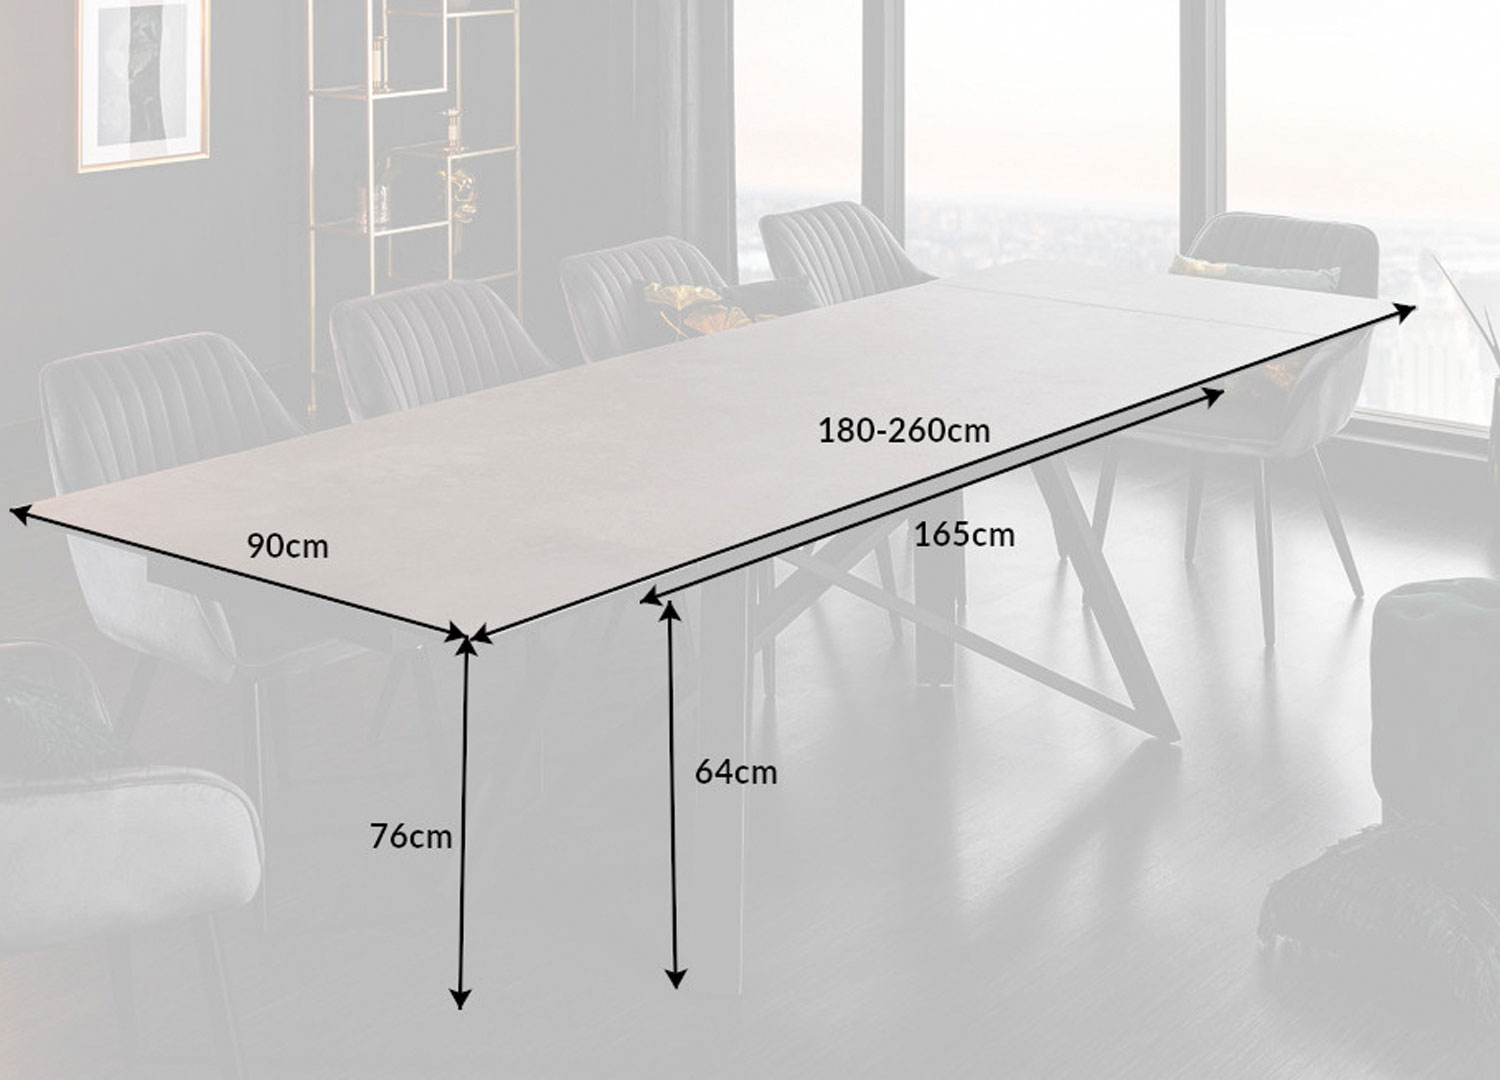 dimensions de la table de repas